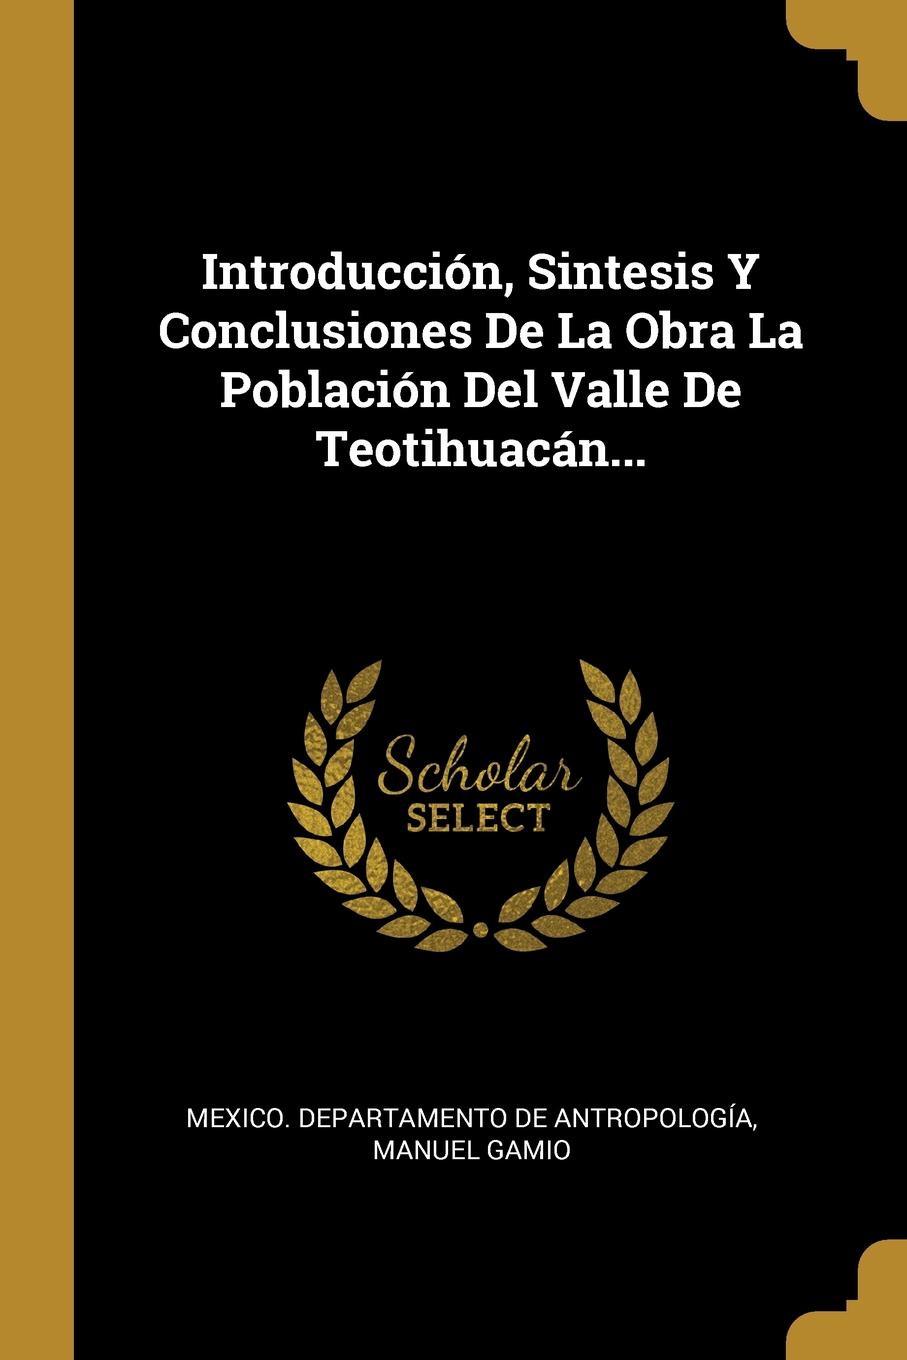 Introduccion, Sintesis Y Conclusiones De La Obra La Poblacion Del Valle De Teotihuacan...